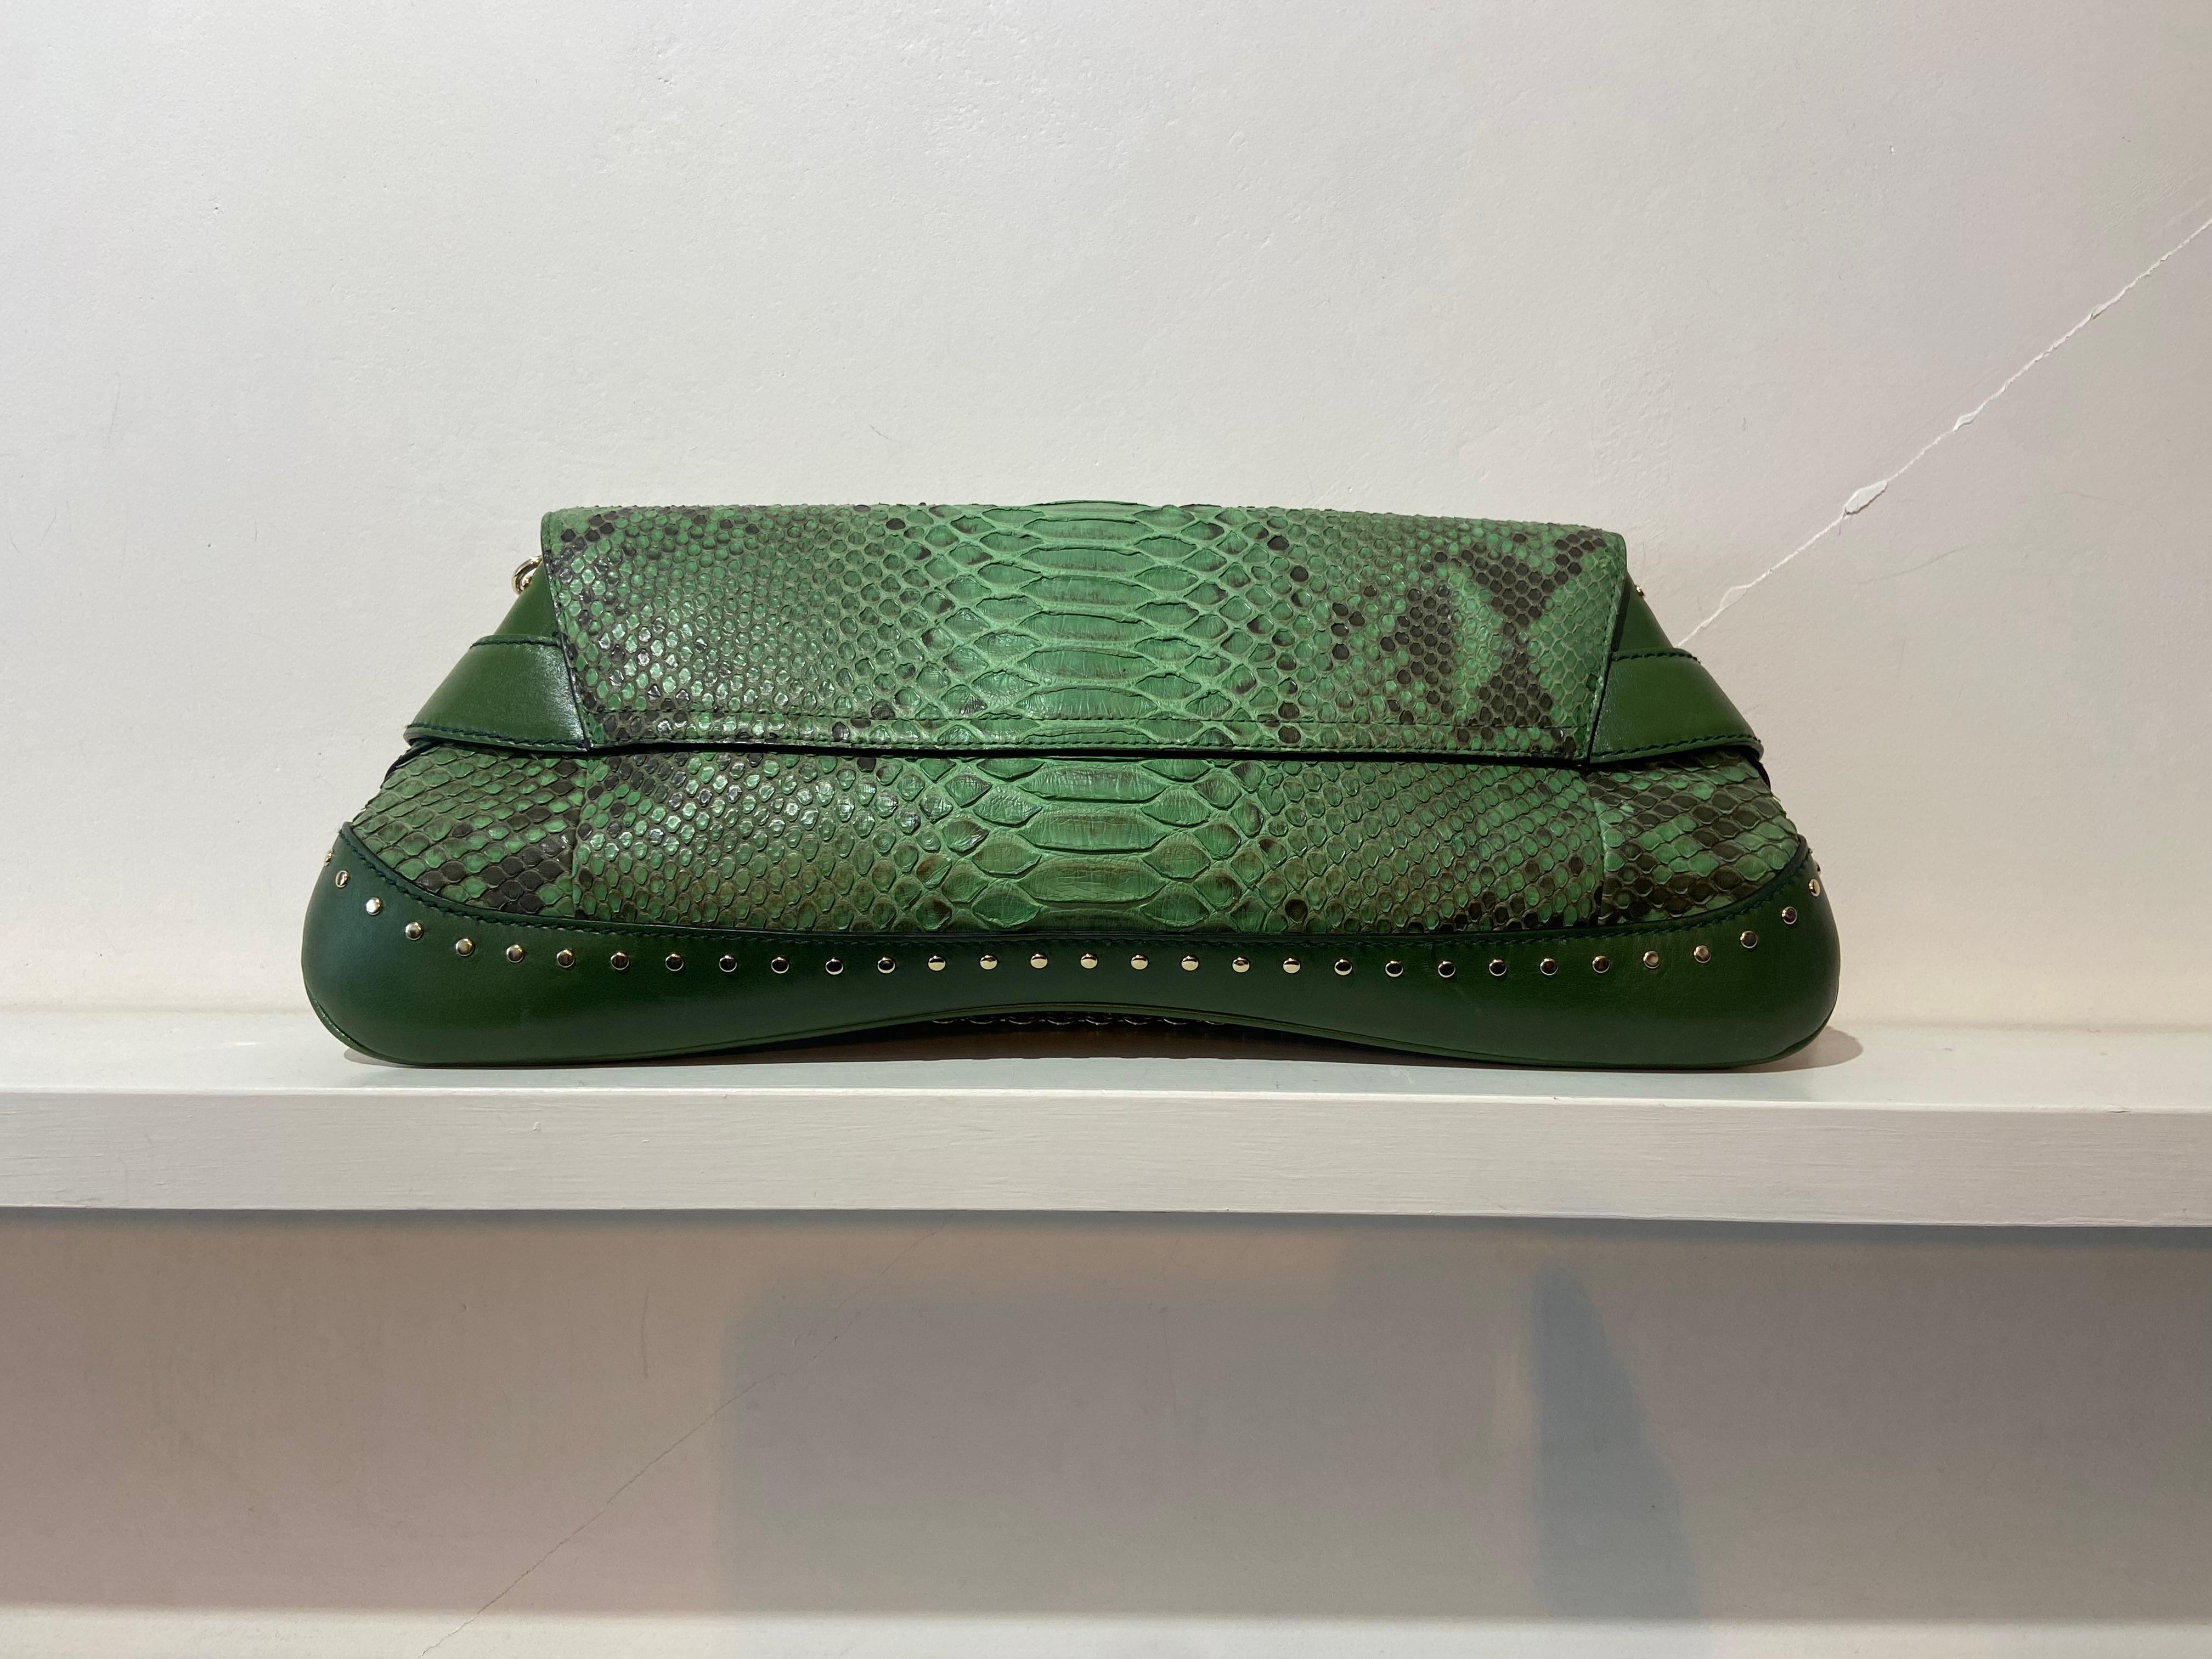 Gucci by Tom Ford 2004 Grüne Eidechsen-Clutch. Mit grünen Eidechsen-Details, grünem Lederboden mit silbernen Details, silberner Horsebit-Hardware in grünem Leder, abnehmbarer Schulterkette und grünem Wildleder-Interieur mit Innentasche auf der